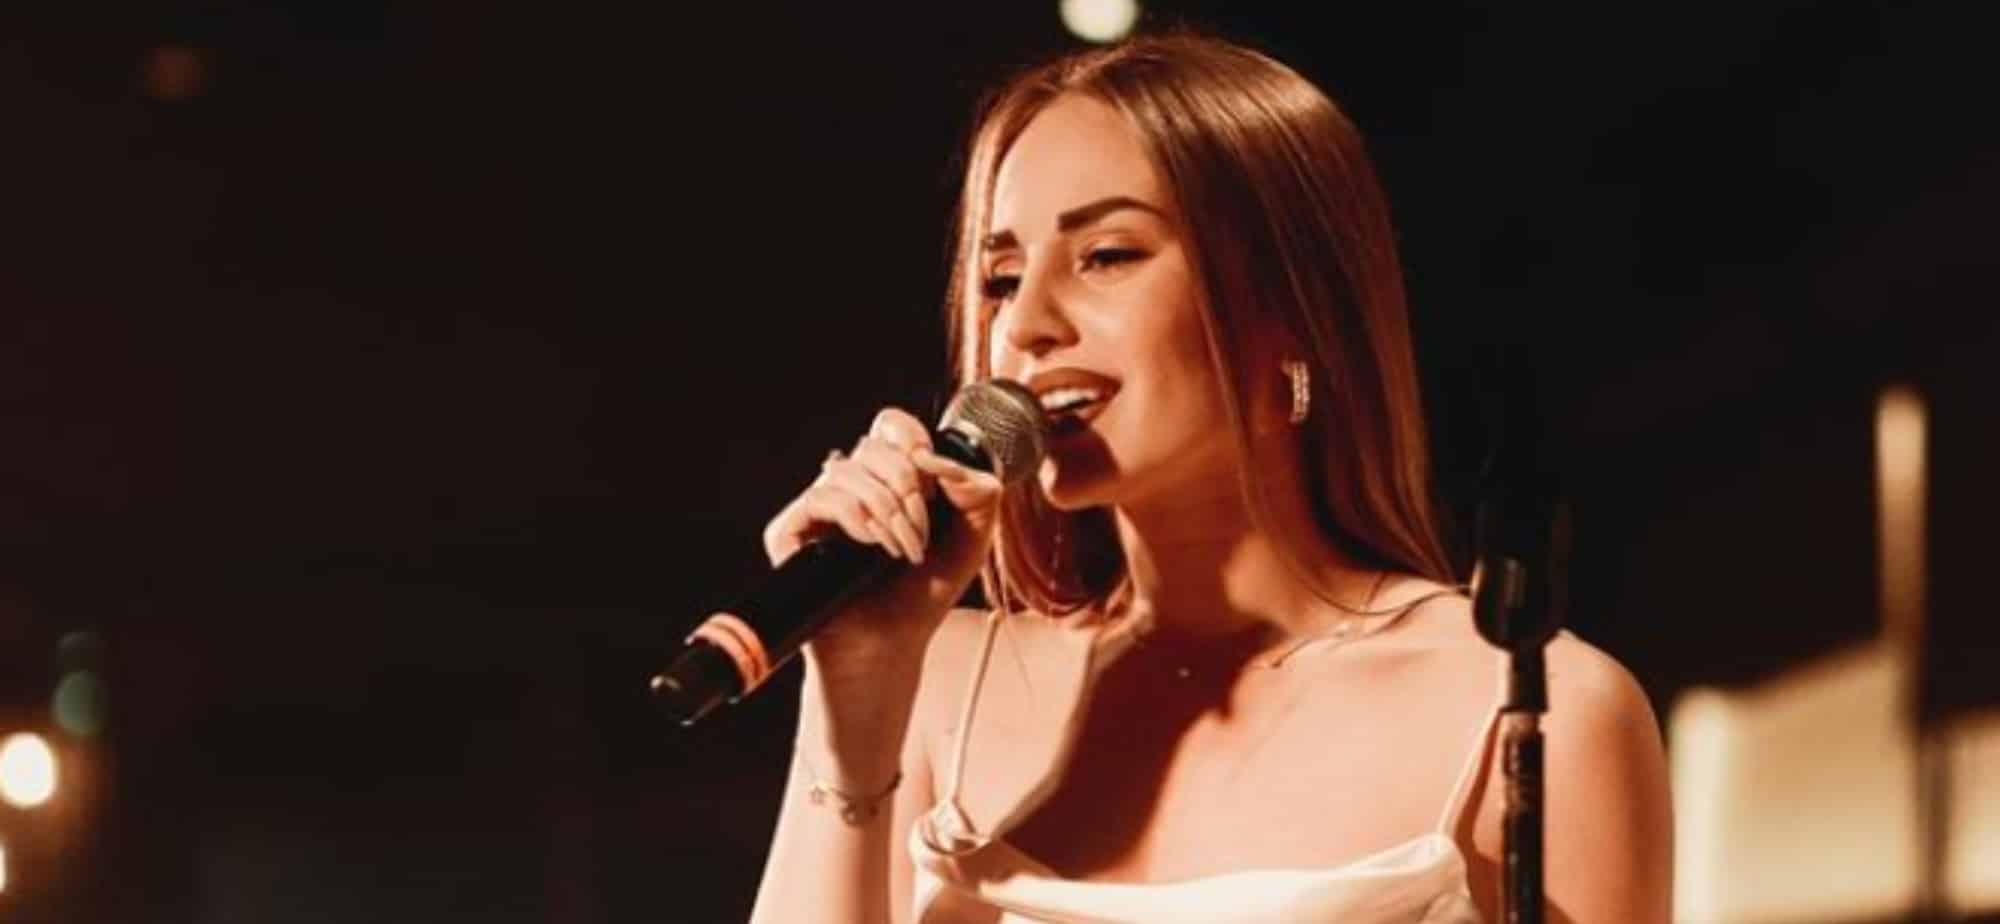 Η τραγουδίστρια, Ανδρομάχη που θα εκπροσωπήσει την Κύπρο φέτος στην Eurovision